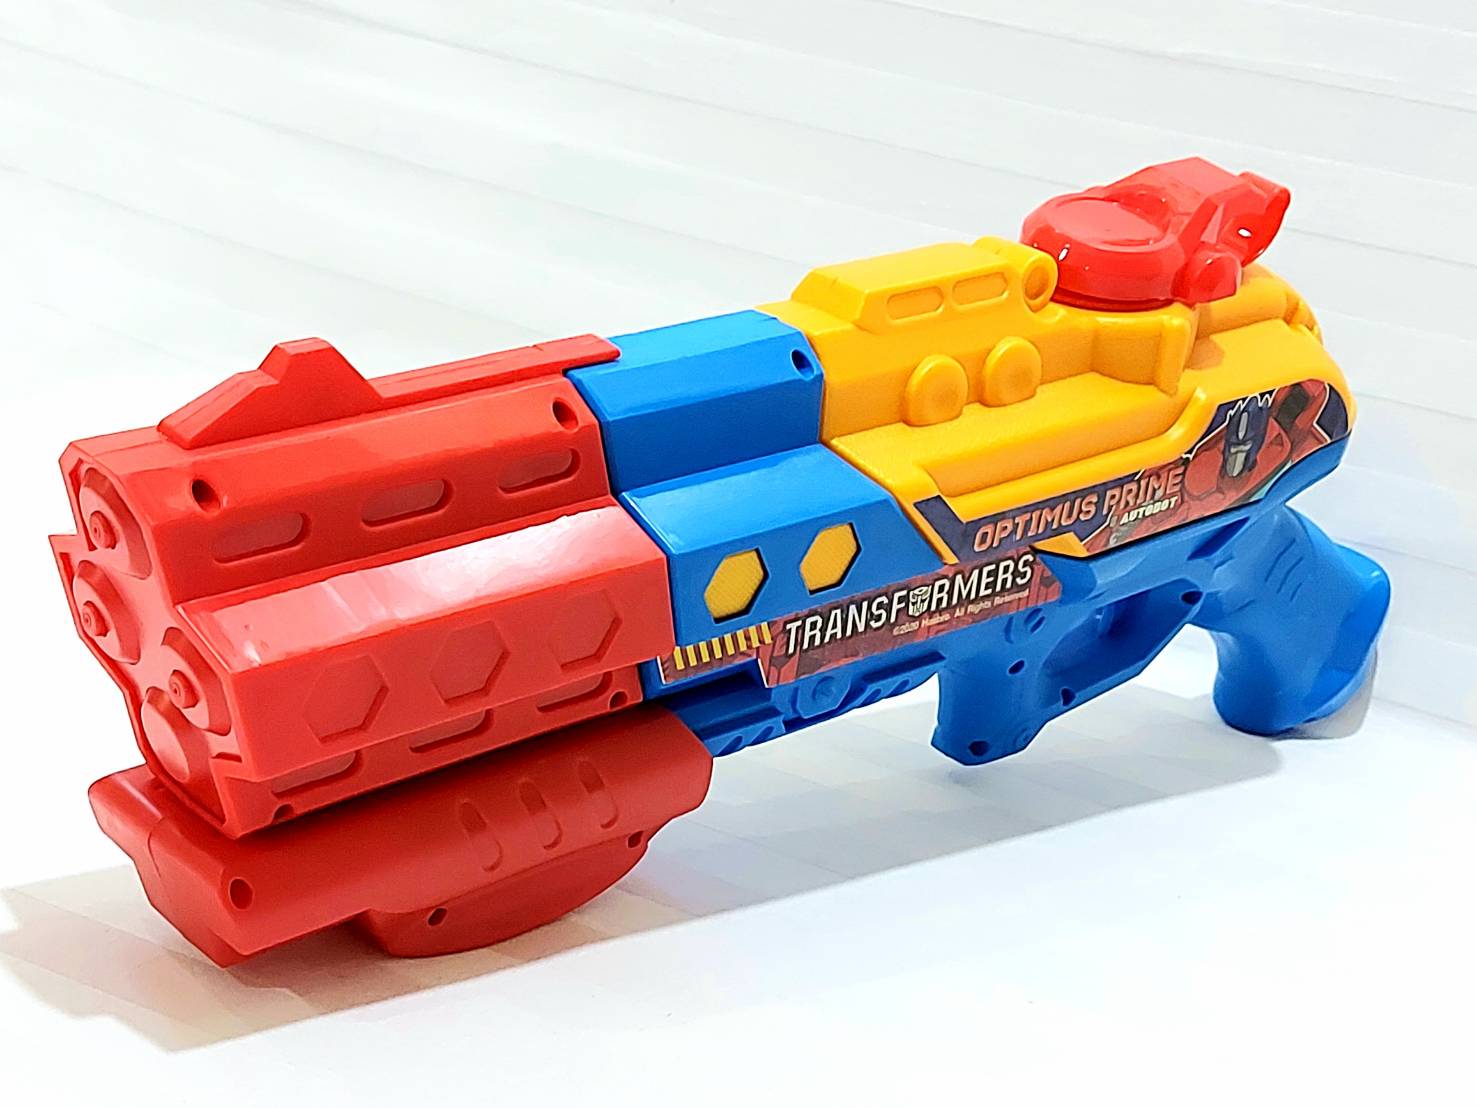 ปืนฉีดน้ำ ปืนฉีดน้ำเด็ก ปืนฉีดน้ำทรานฟอร์เมอร์ ปิ๊ด ปิ๊ด ปืนฉีดน้ำของเล่น  ปืนของเล่น ของเล่นเด็ก